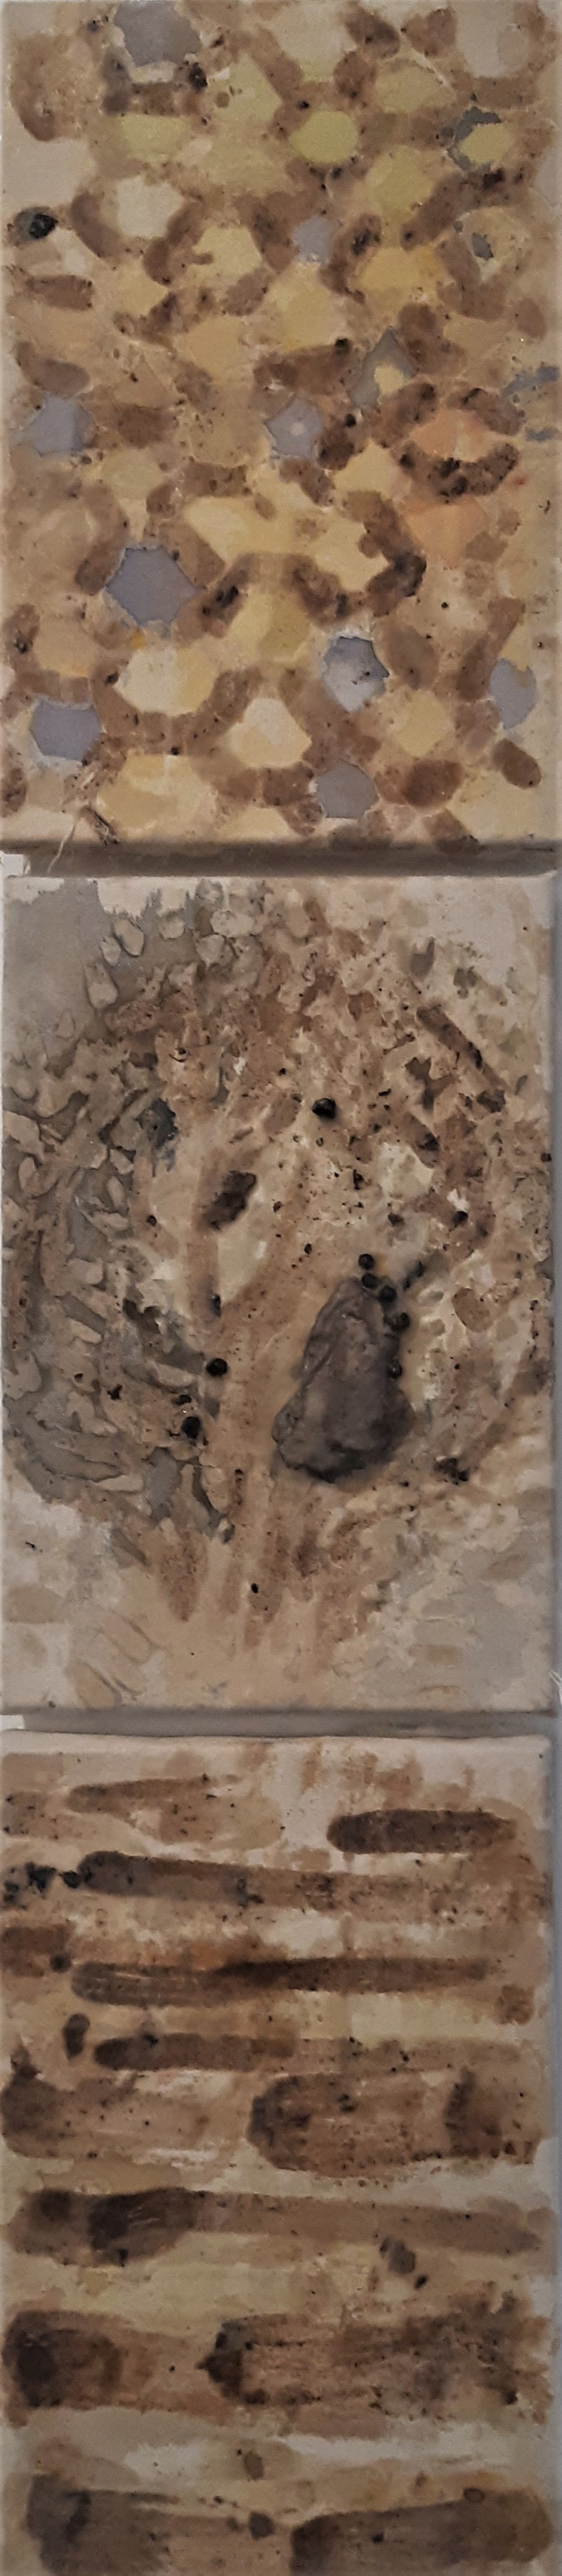 Kristina Čivilytė tapytas paveikslas Triptikas \\"Korių raštai\\", Miniatiūros - Maži darbai , paveikslai internetu